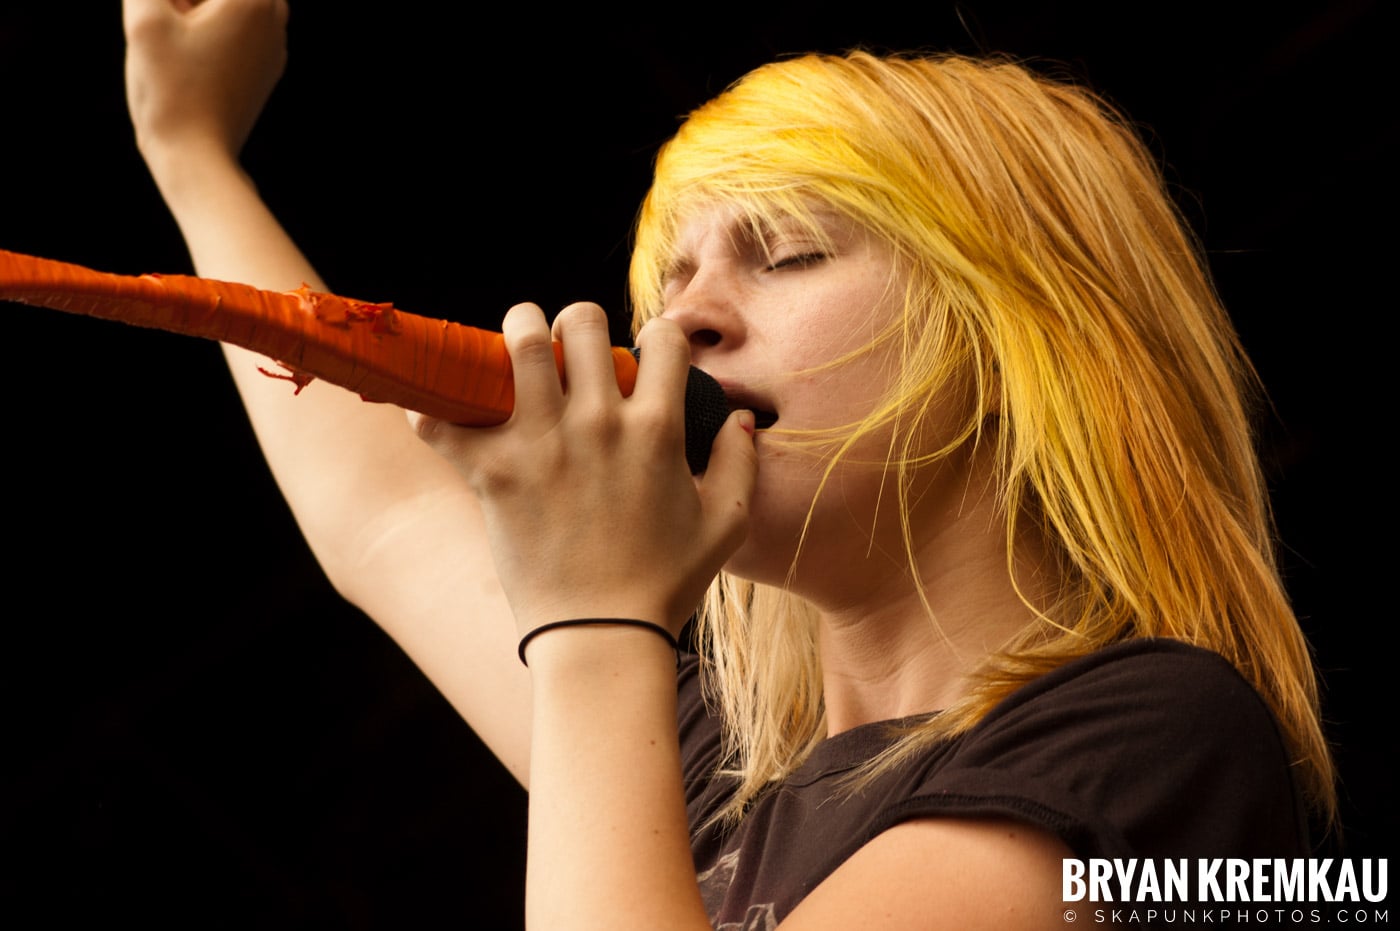 Paramore @ Warped Tour 2007, Scranton PA - 7.26.07 (5)